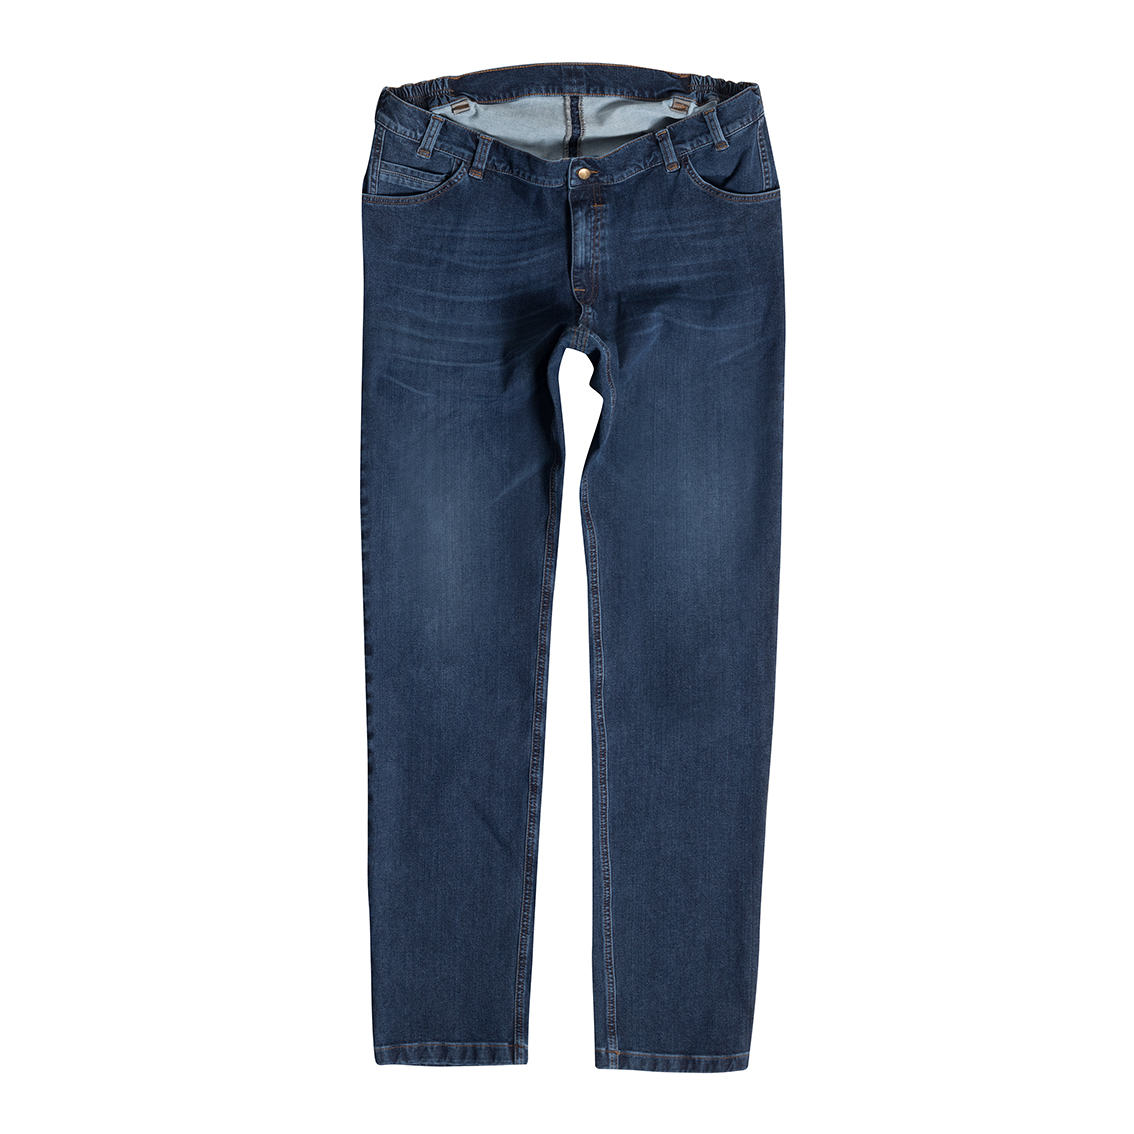 Men's Jeans Bi-Stretch, blue MIKE 10390 50